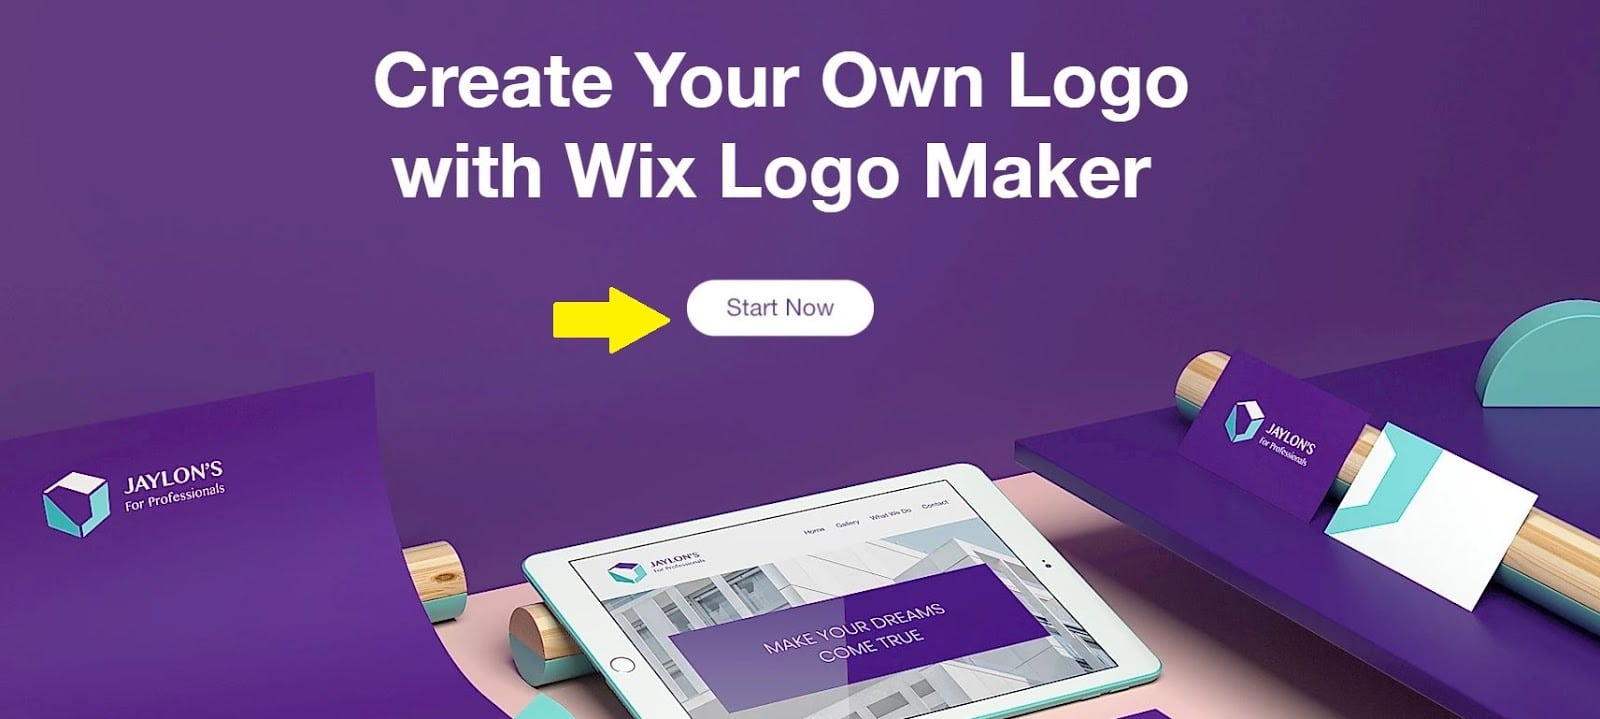 Wix Logo Maker screenshot - Start now